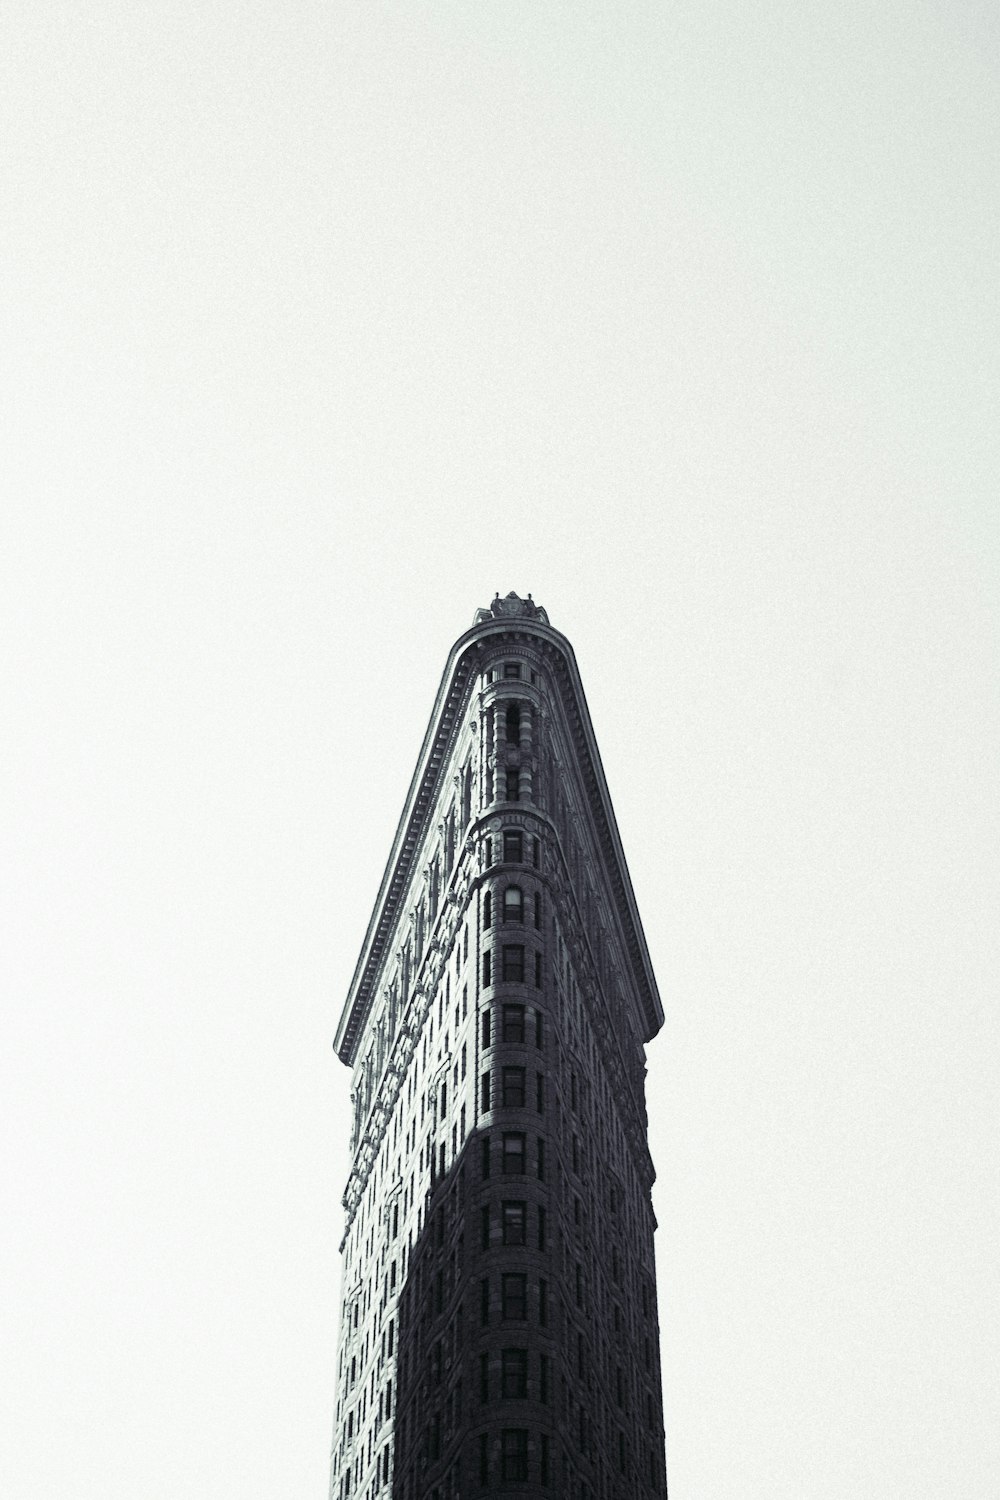 Photographie en niveaux de gris d’un bâtiment en fer plat